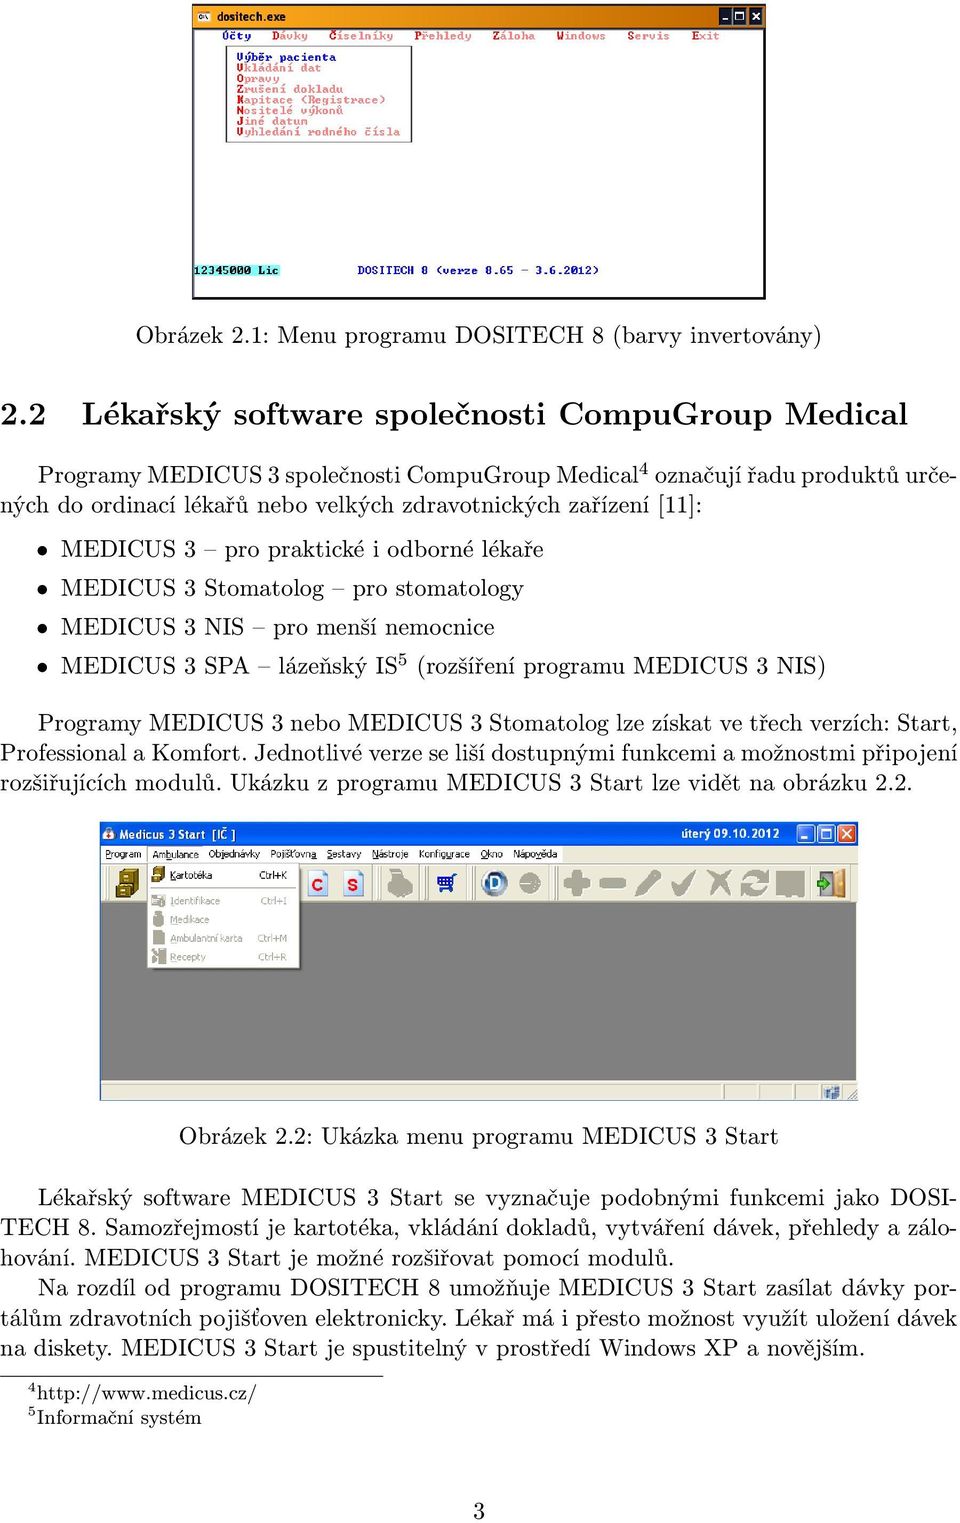 MEDICUS 3 pro praktické i odborné lékaře MEDICUS 3 Stomatolog pro stomatology MEDICUS 3 NIS pro menší nemocnice MEDICUS 3 SPA lázeňský IS 5 (rozšíření programu MEDICUS 3 NIS) Programy MEDICUS 3 nebo